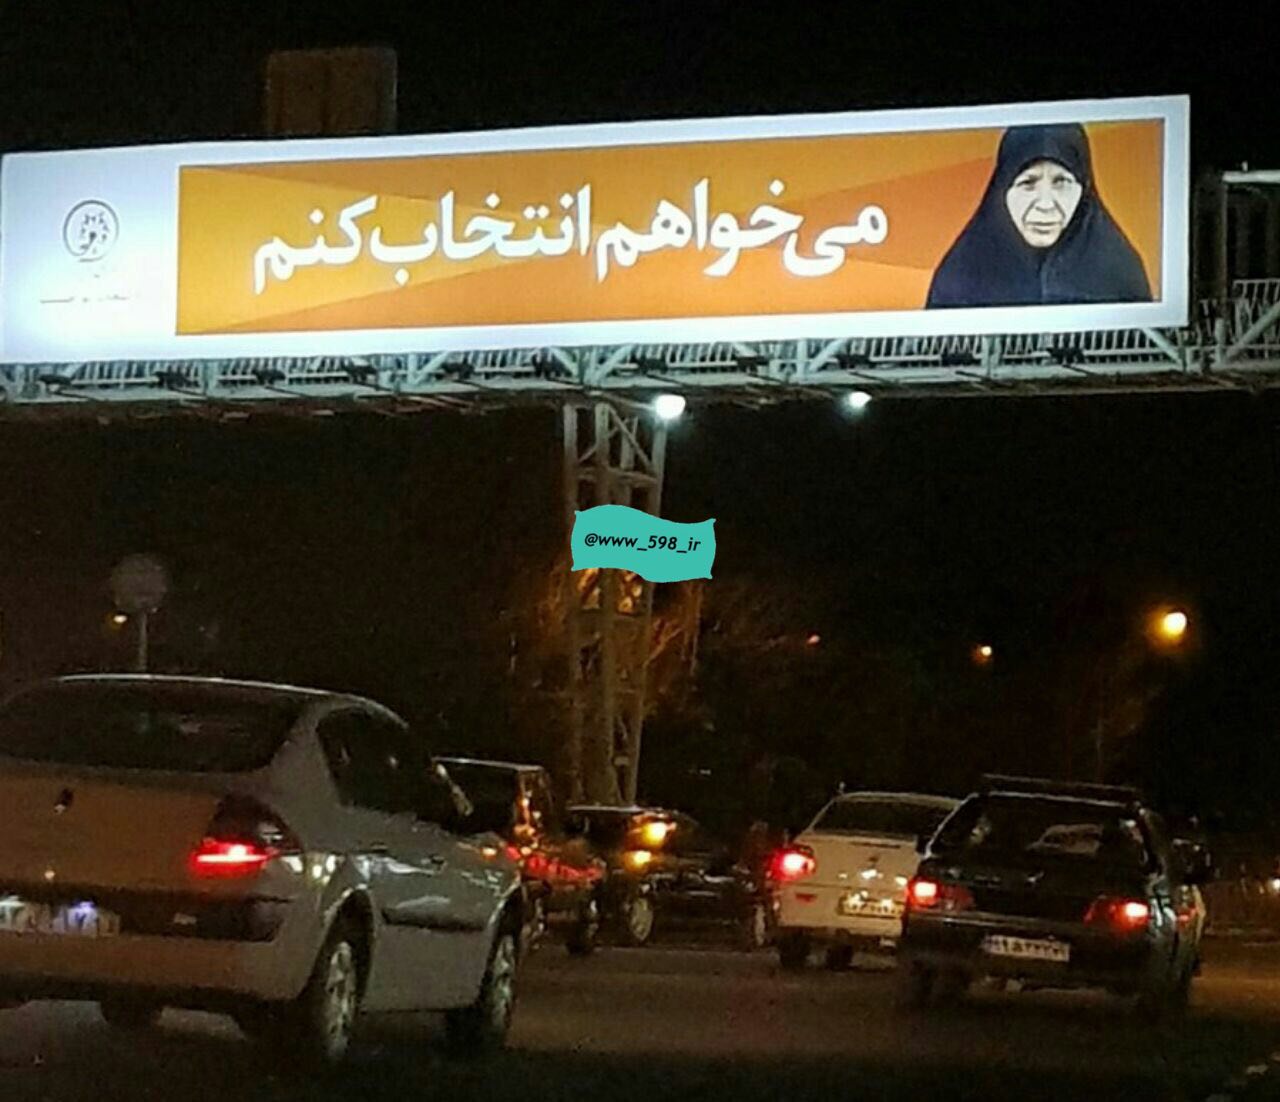 ضد تبلیغ برای حجاب در بیلبوردهای شهر تهران! + عکس